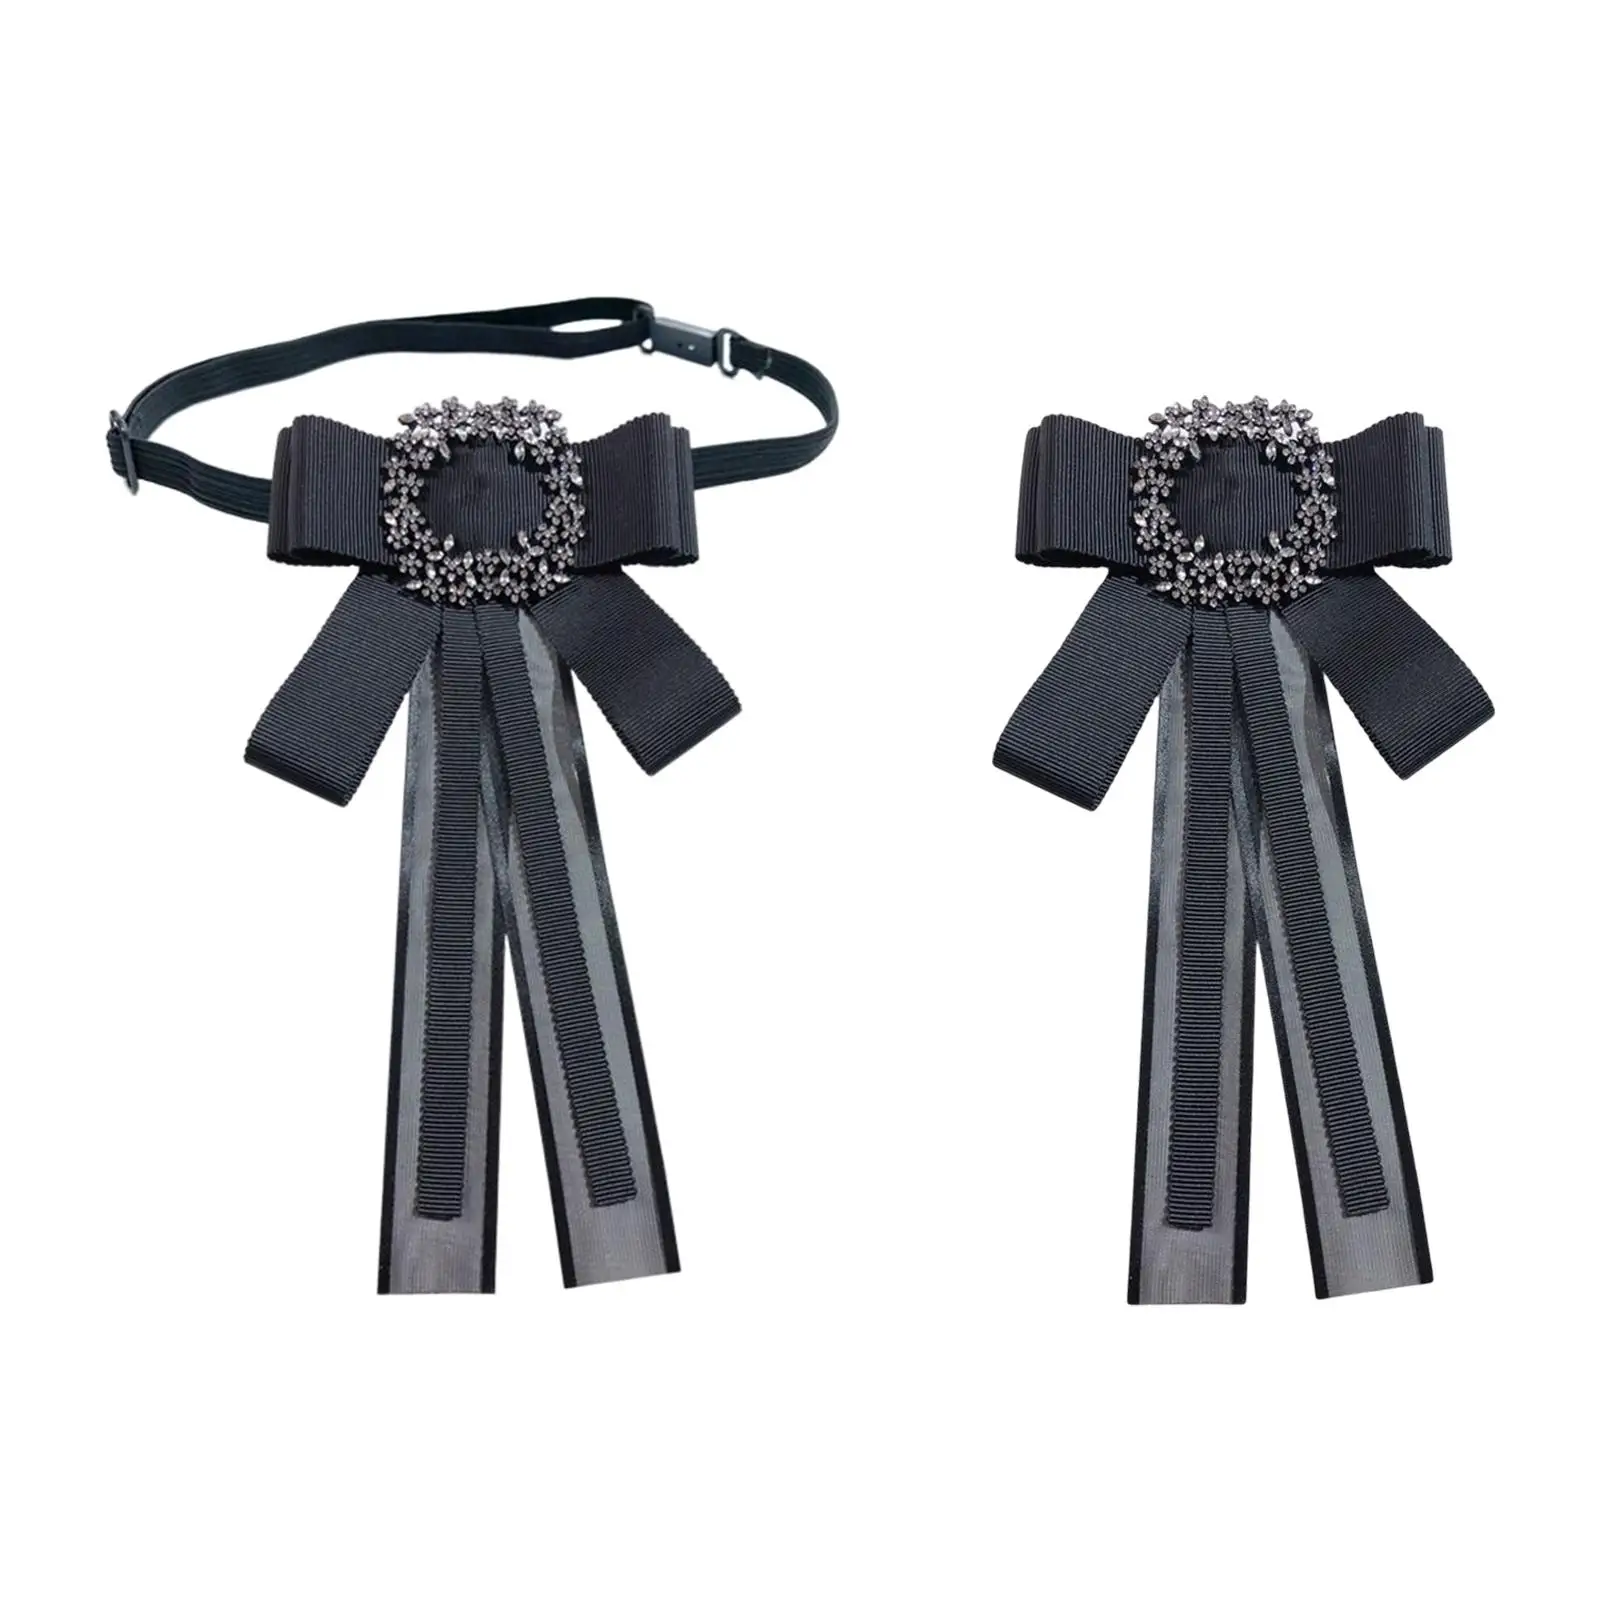 Black Bow Tie Lady Bowknot Lapel Pin Clothes Decoration Solid Color Badge Elegant Necktie for Suit Vest Shirt Graduation Dress